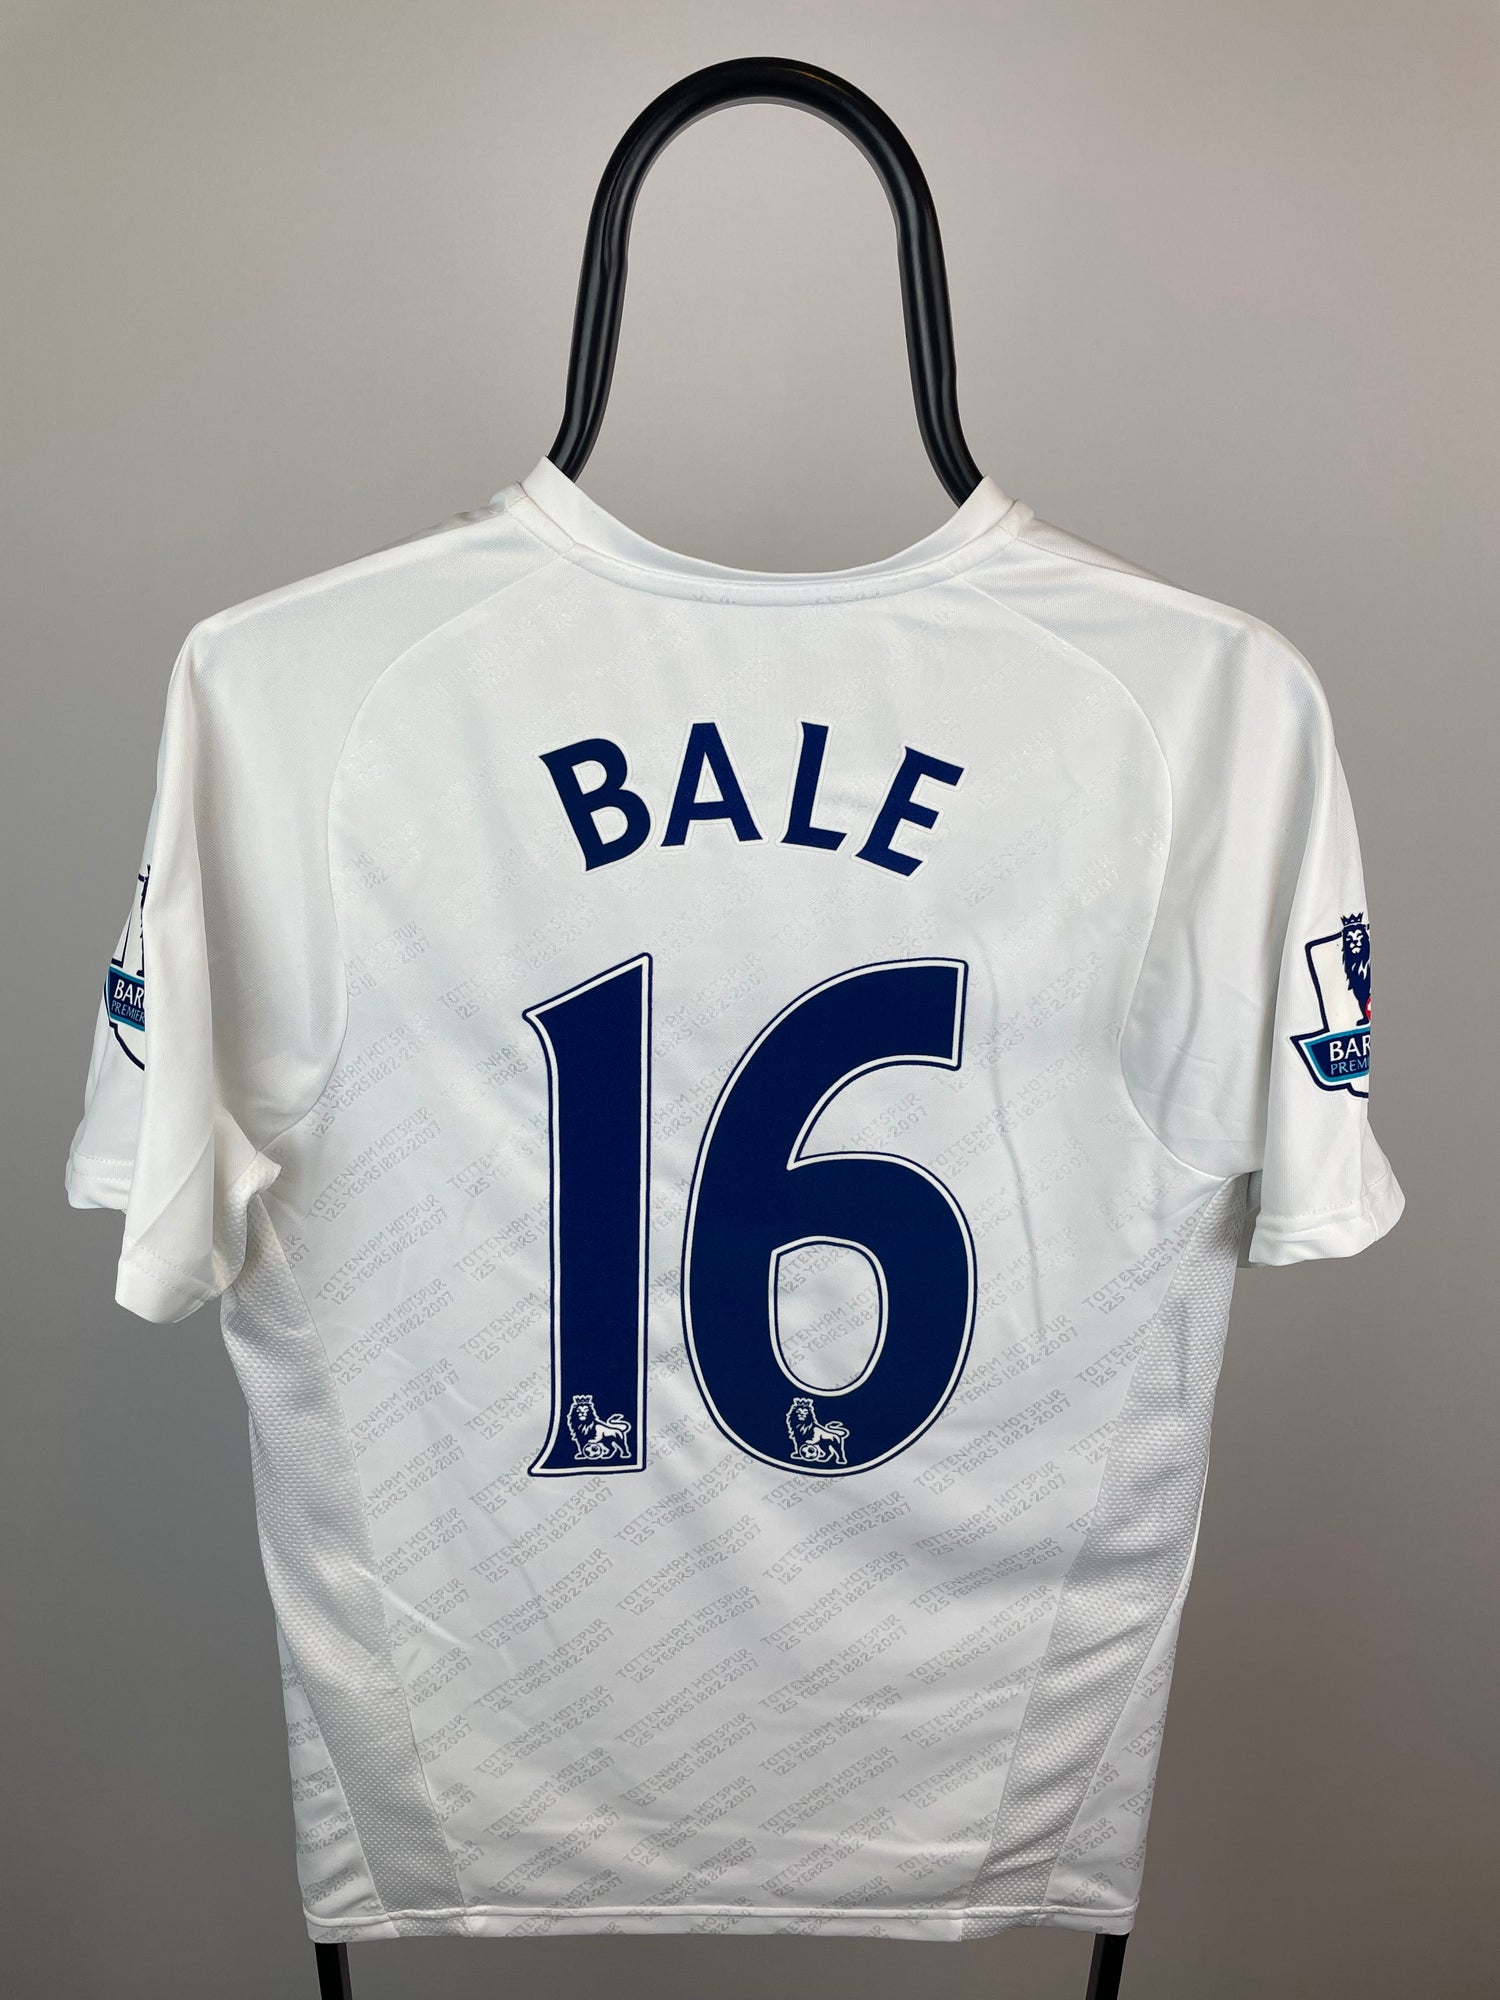 Gareth Bale Tottenham 07/08 hjemmebanetrøje - M